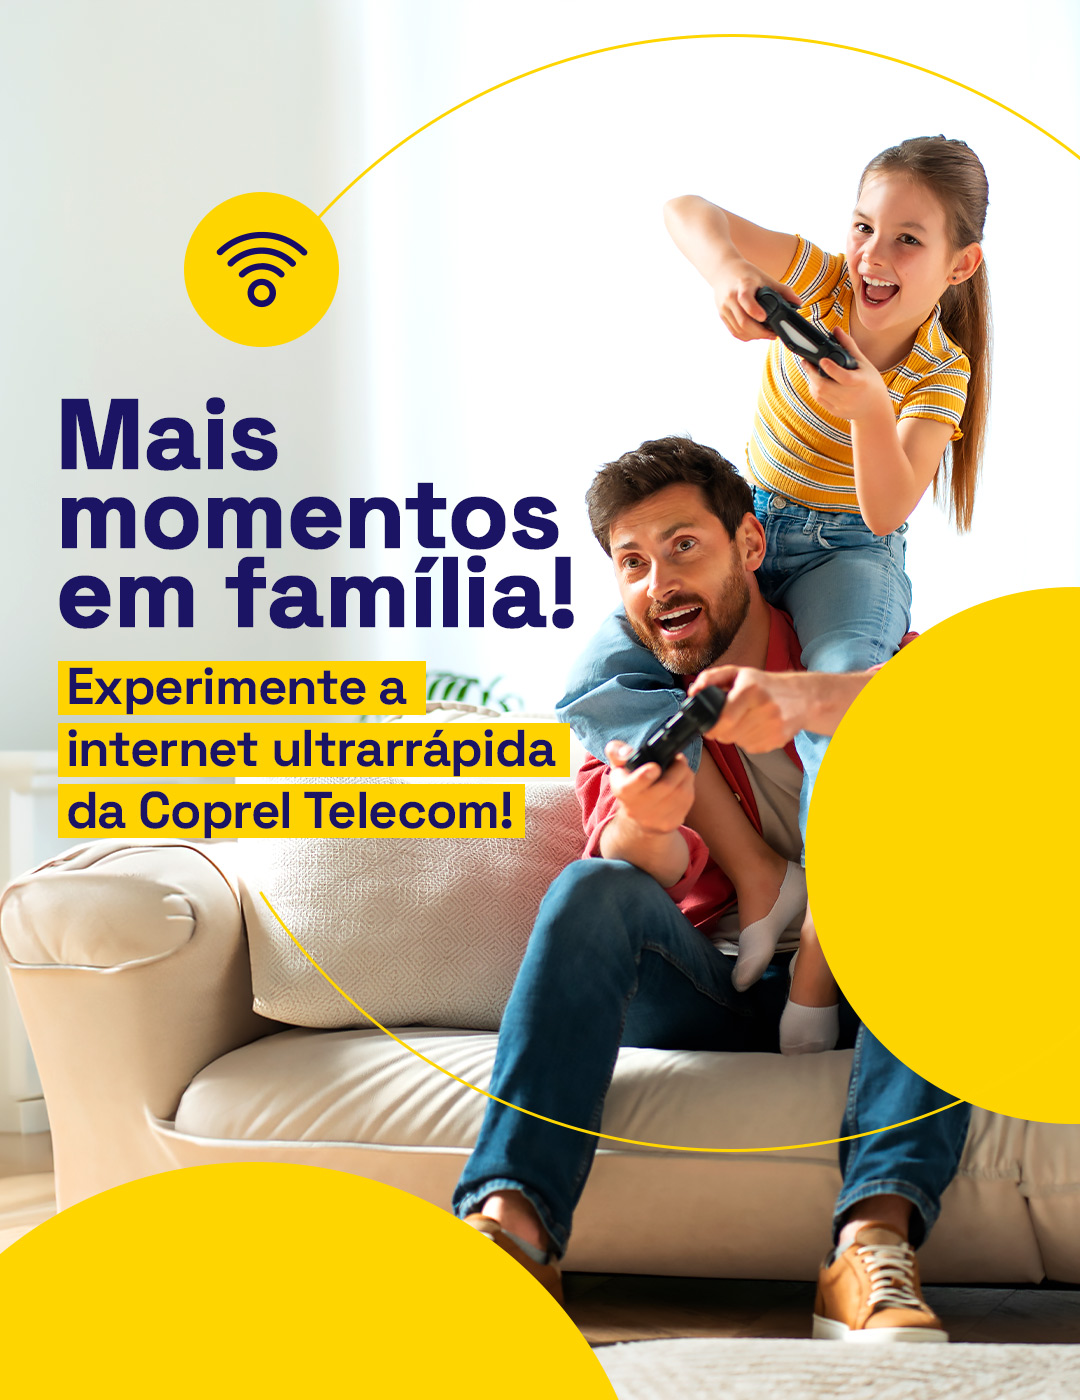 Banner momentos em família  Coprel Telecom